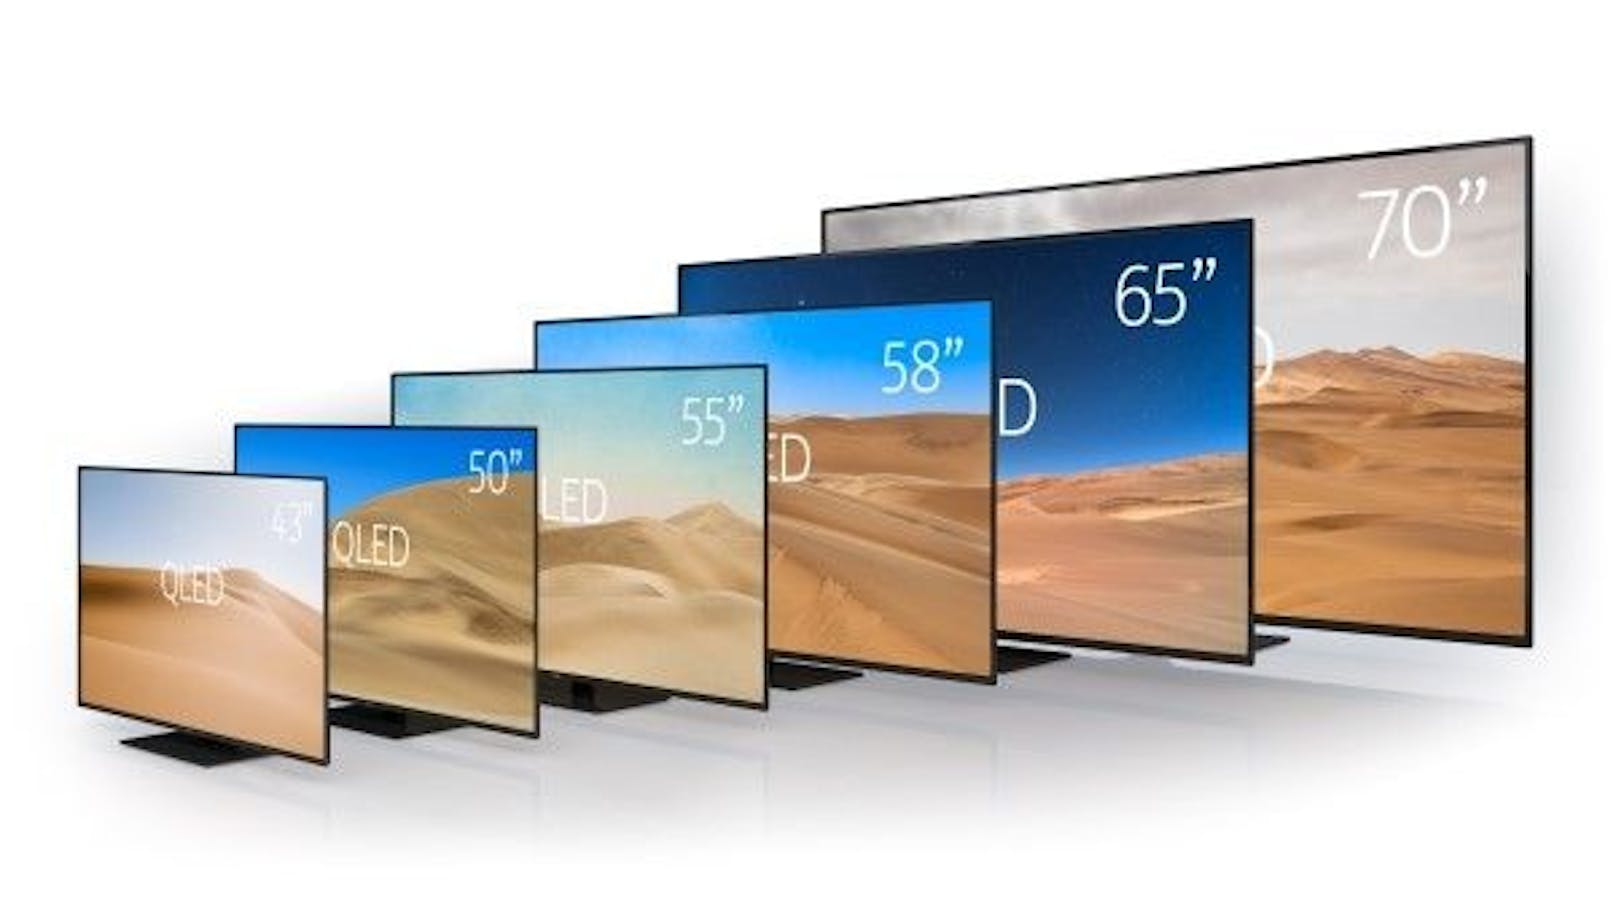 Vier neue Größen der 4K UHD Nokia Smart TVs mit QLED-Technologie.